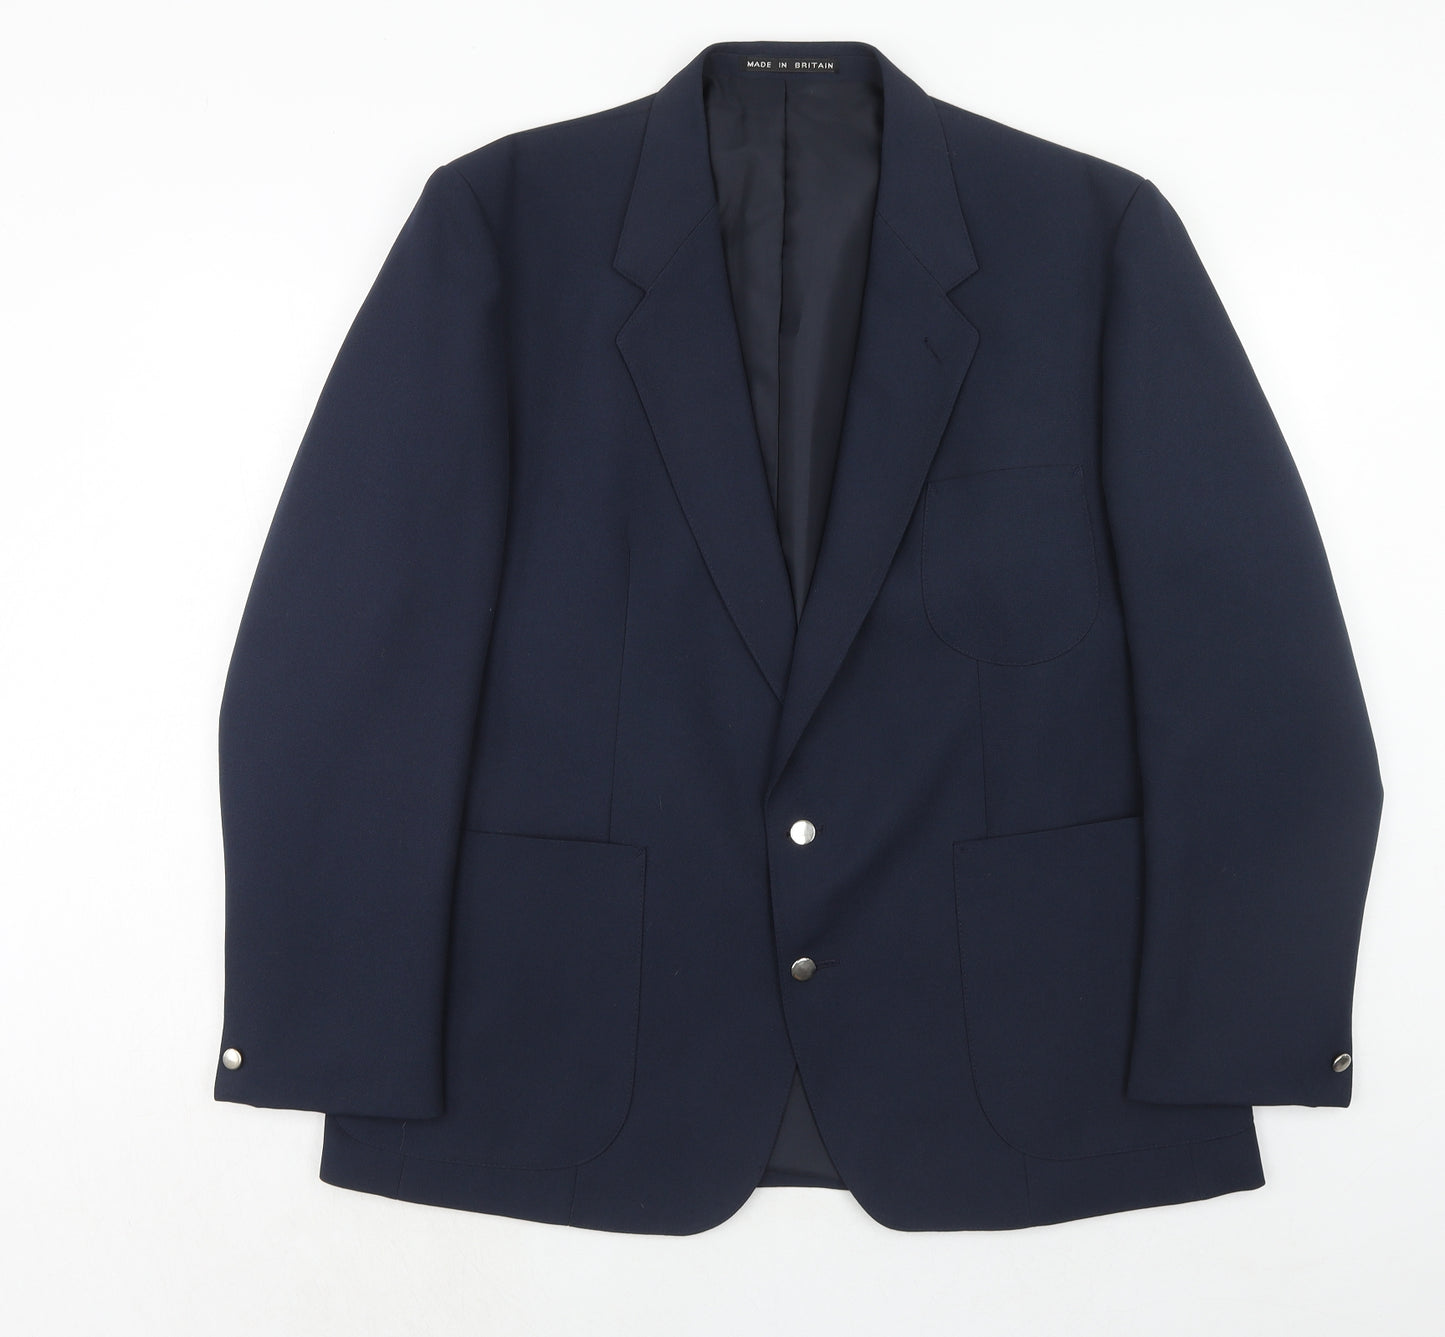 Greenwoods Mens Blue Polyester Jacket Suit Jacket Size 44 Regular